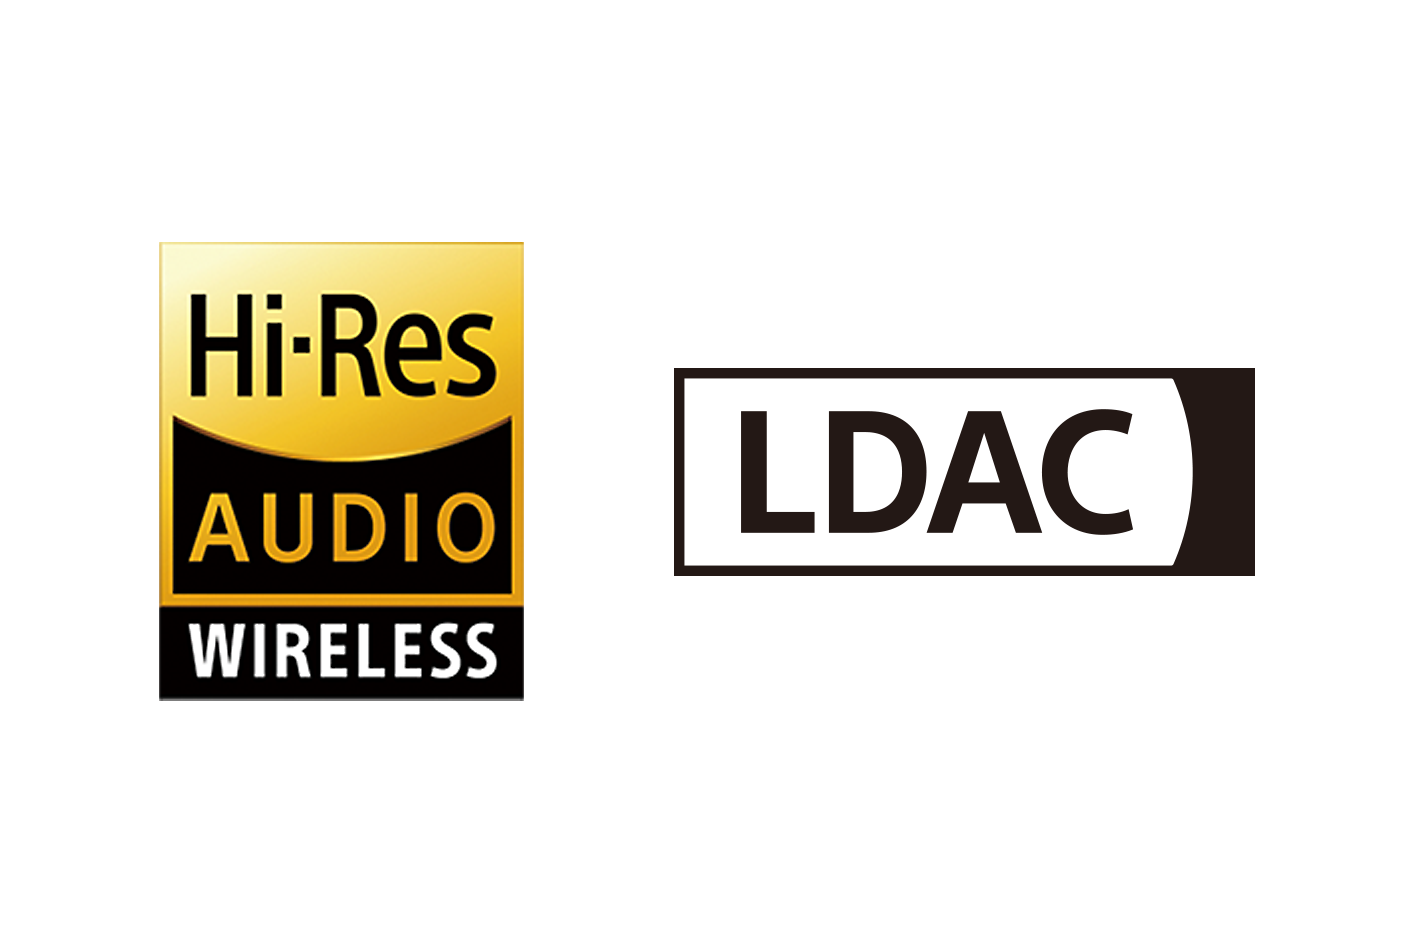 Hi-Res Audio Wireless and LDAC logos.